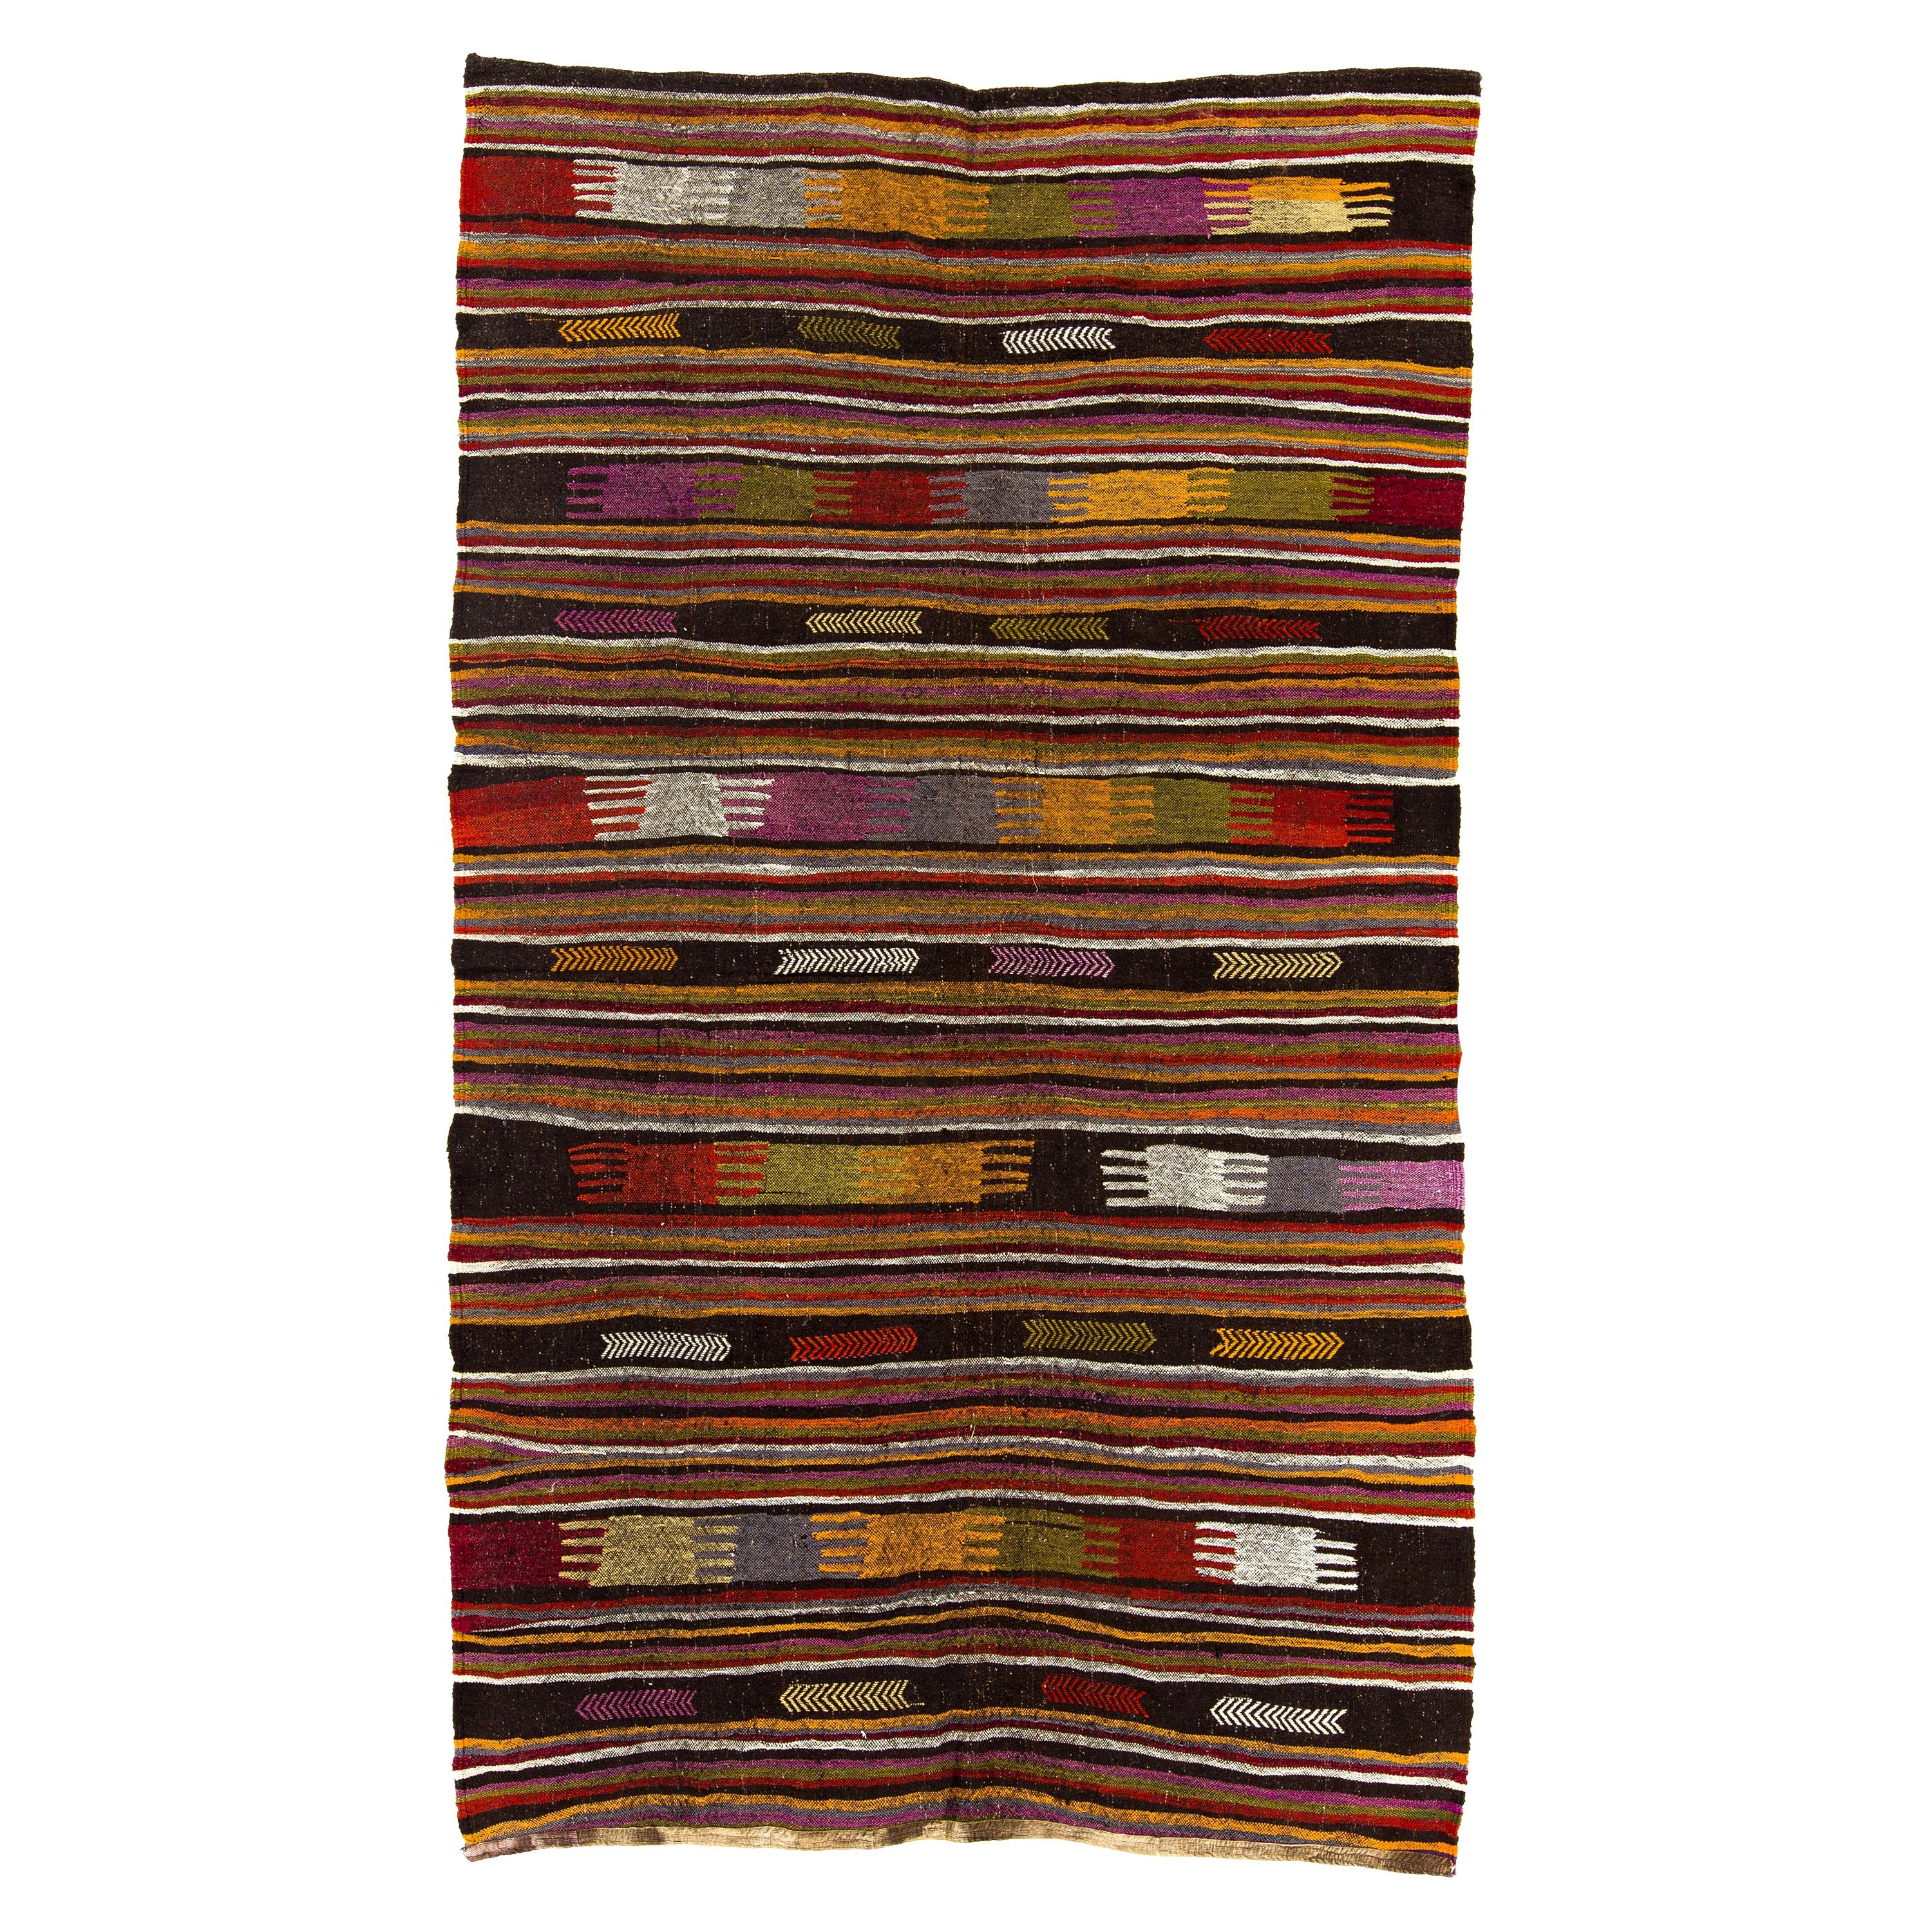 5,5 x 9,2 m farbenfroher anatolischer Kelim, Flachgewebteppich aus Wolle, Bodenbeläge